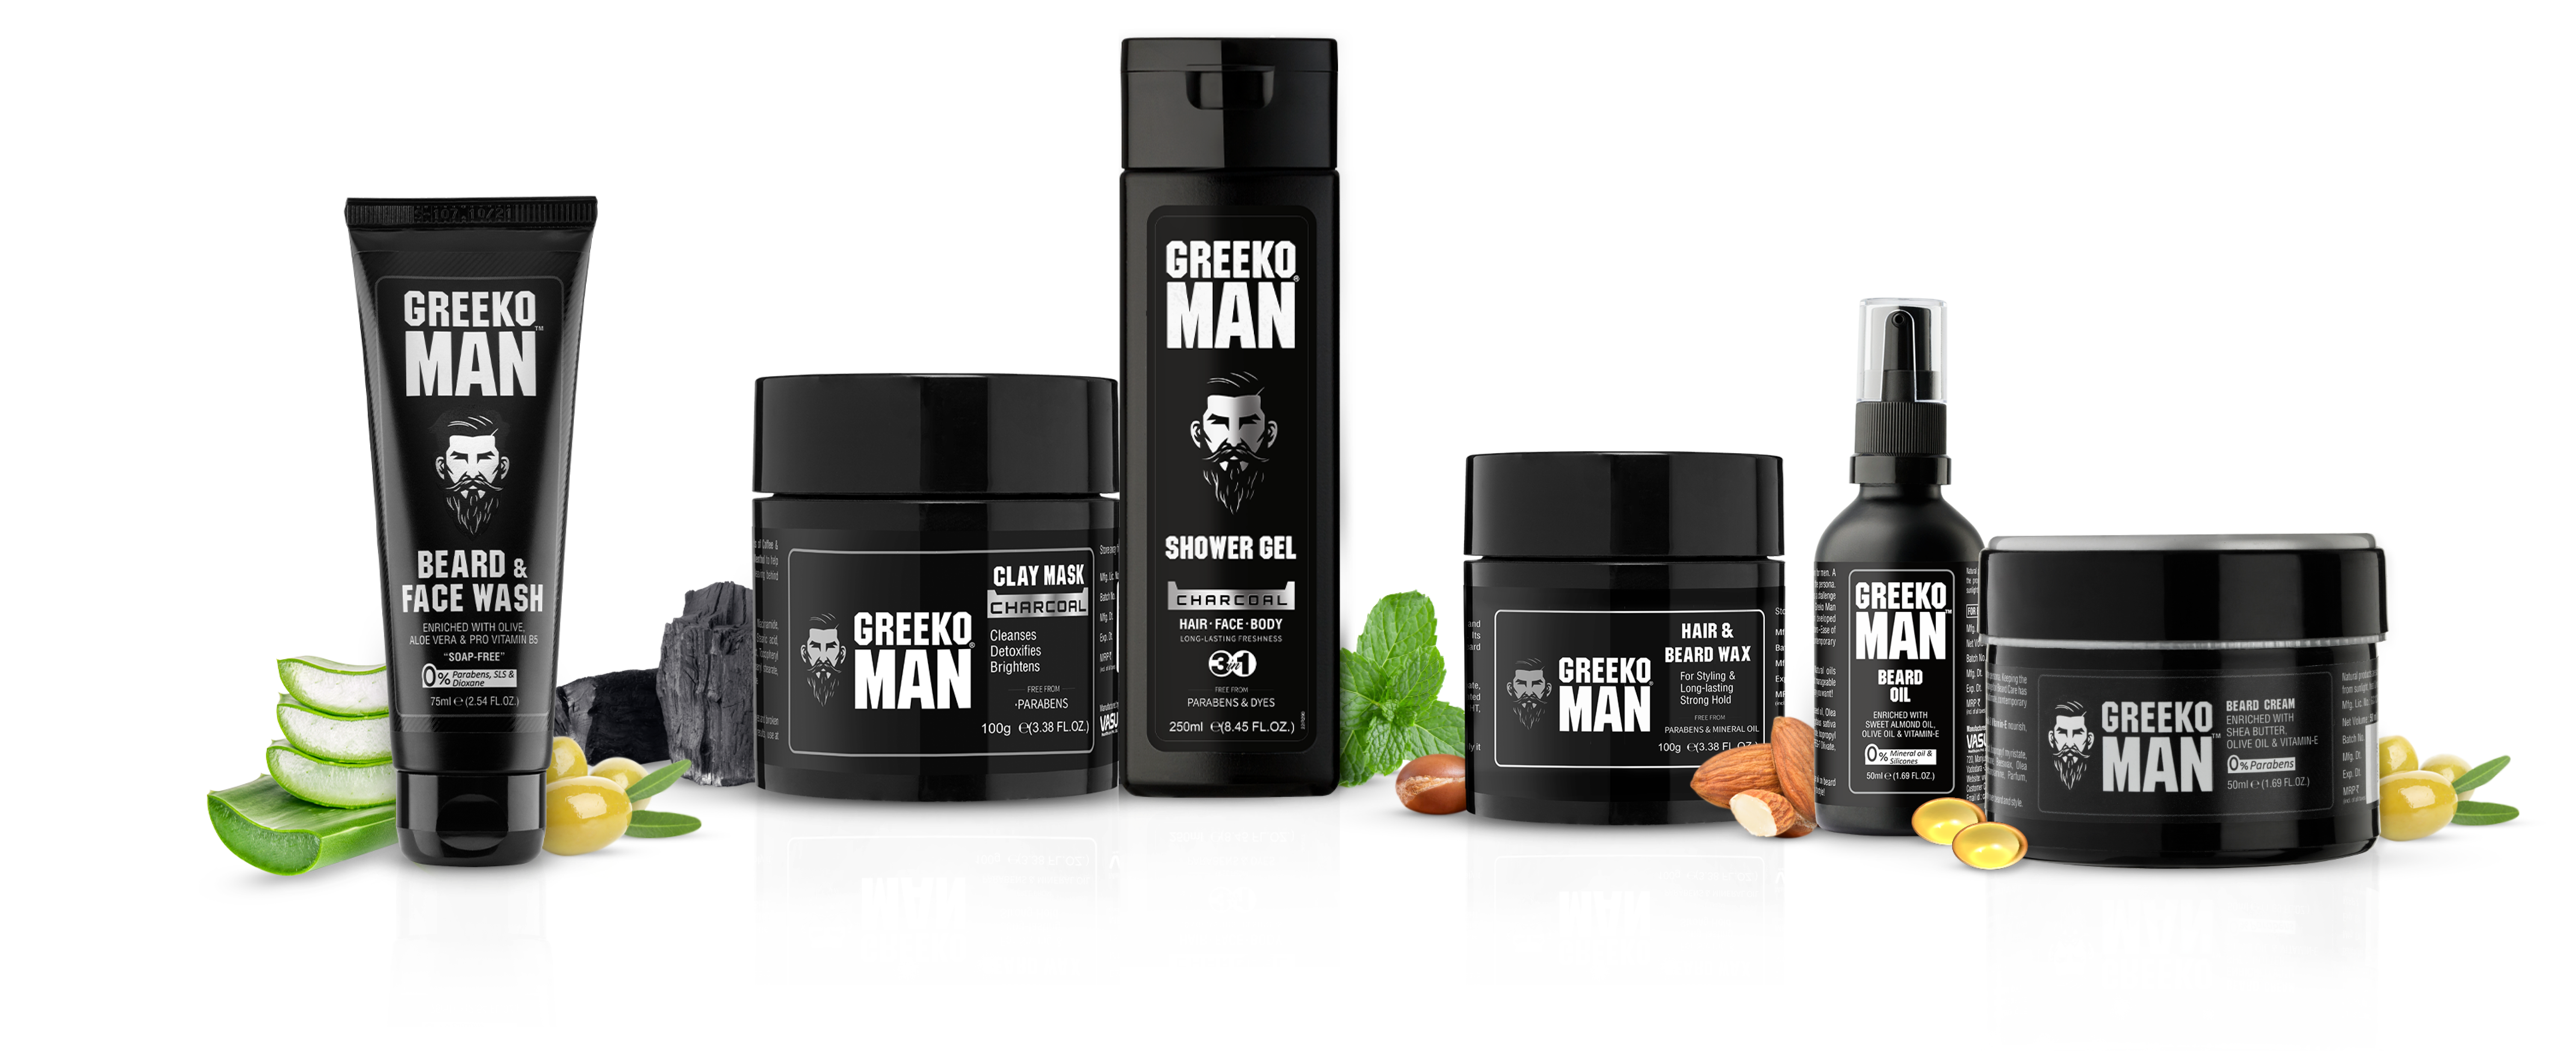 Greeko Man's Complete Grooming Kit